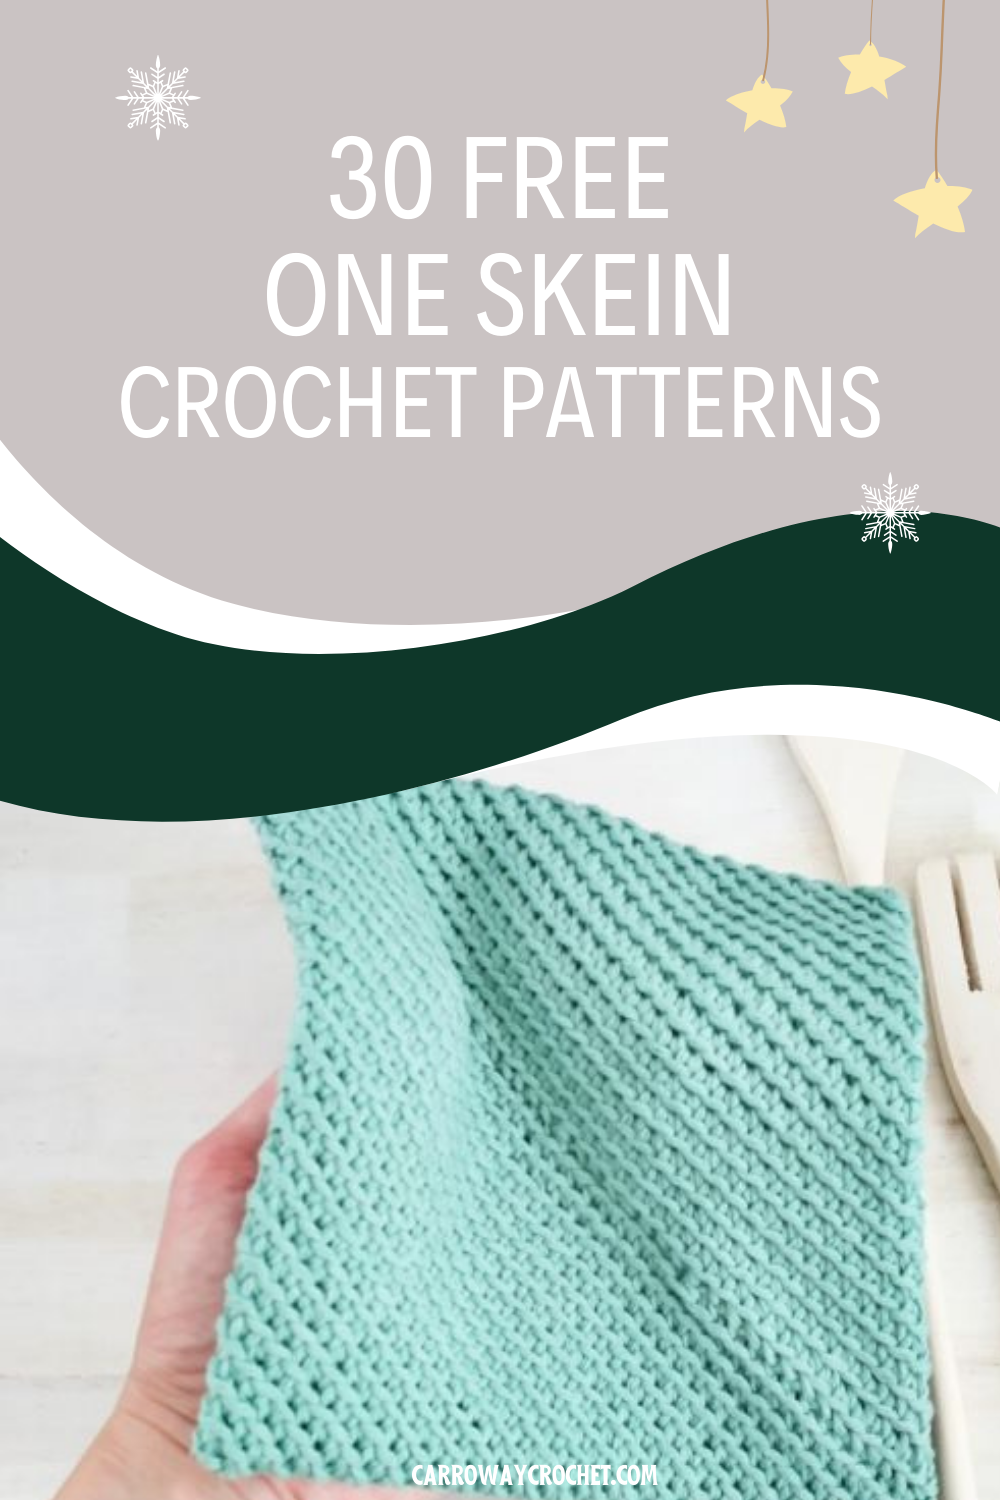 10 Beautiful Free Crochet Lace Patterns - Nicki's Homemade Crafts